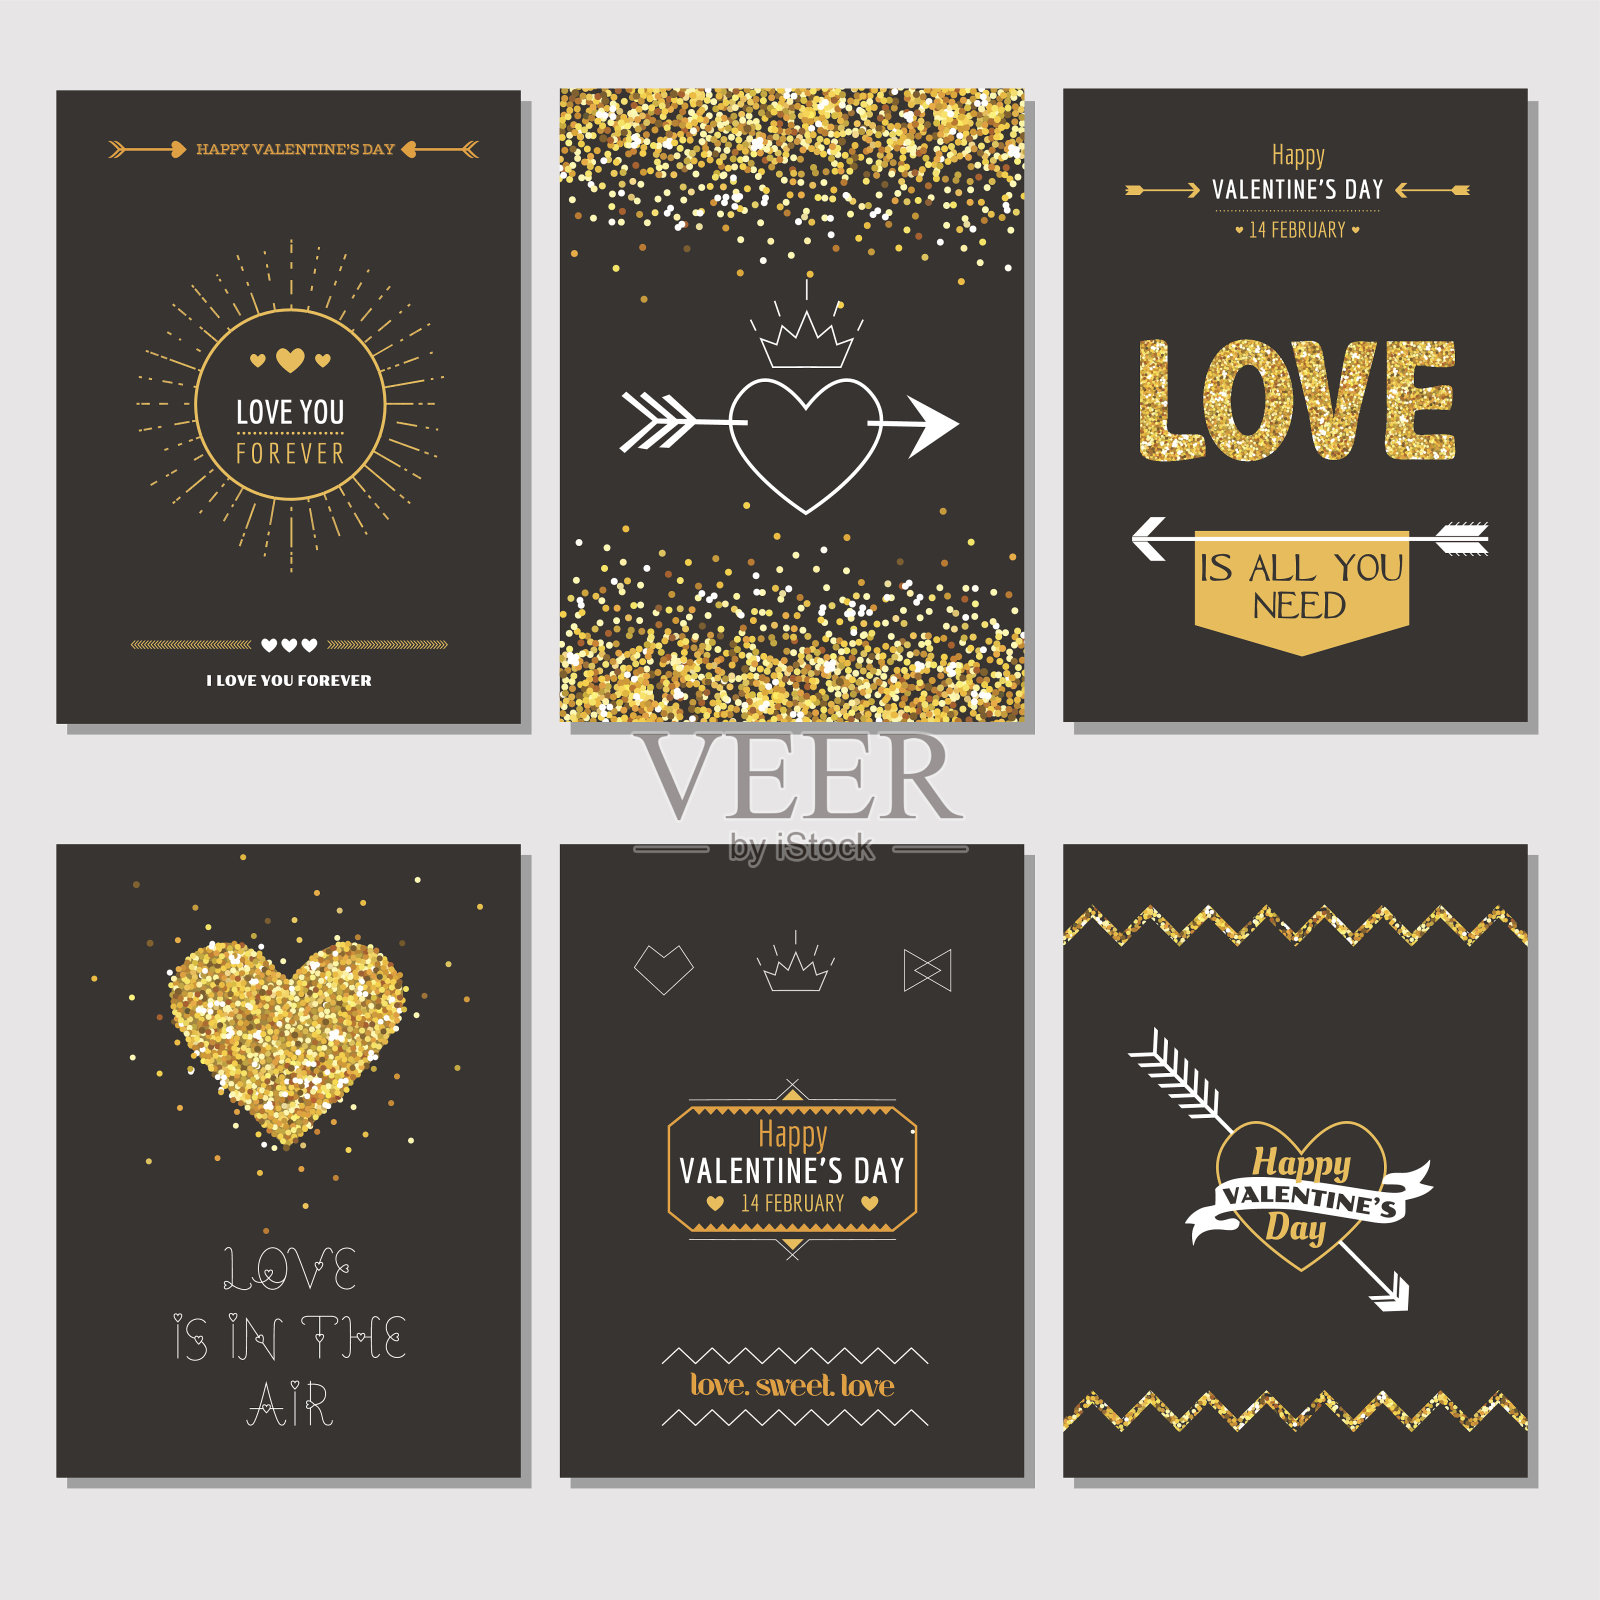 一套爱的卡片-婚礼，情人节，邀请设计模板素材